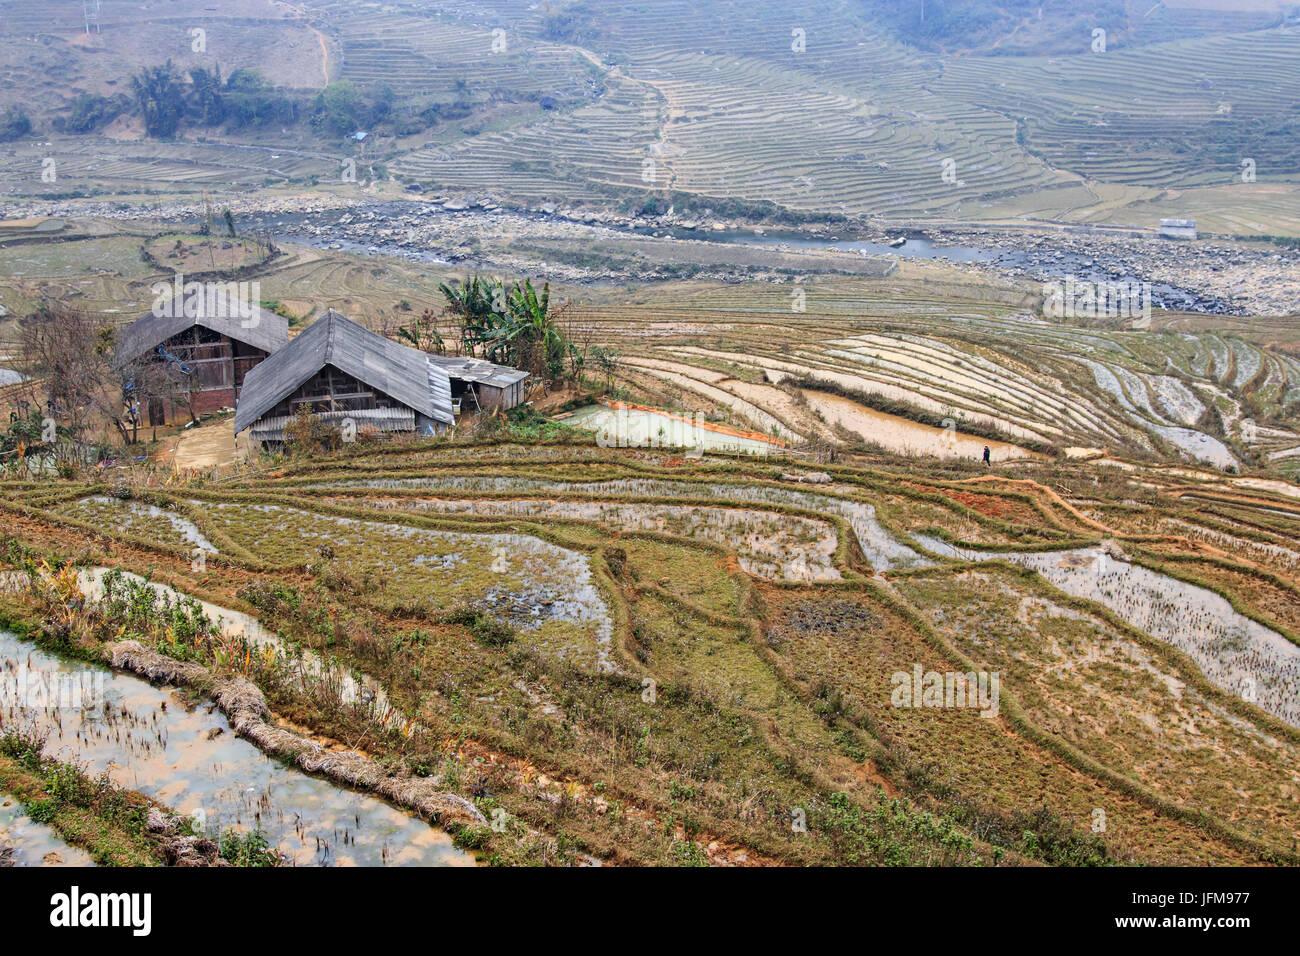 Casa aislada entre las terrazas de arroz de Sapa en Vietnam del norte Foto de stock